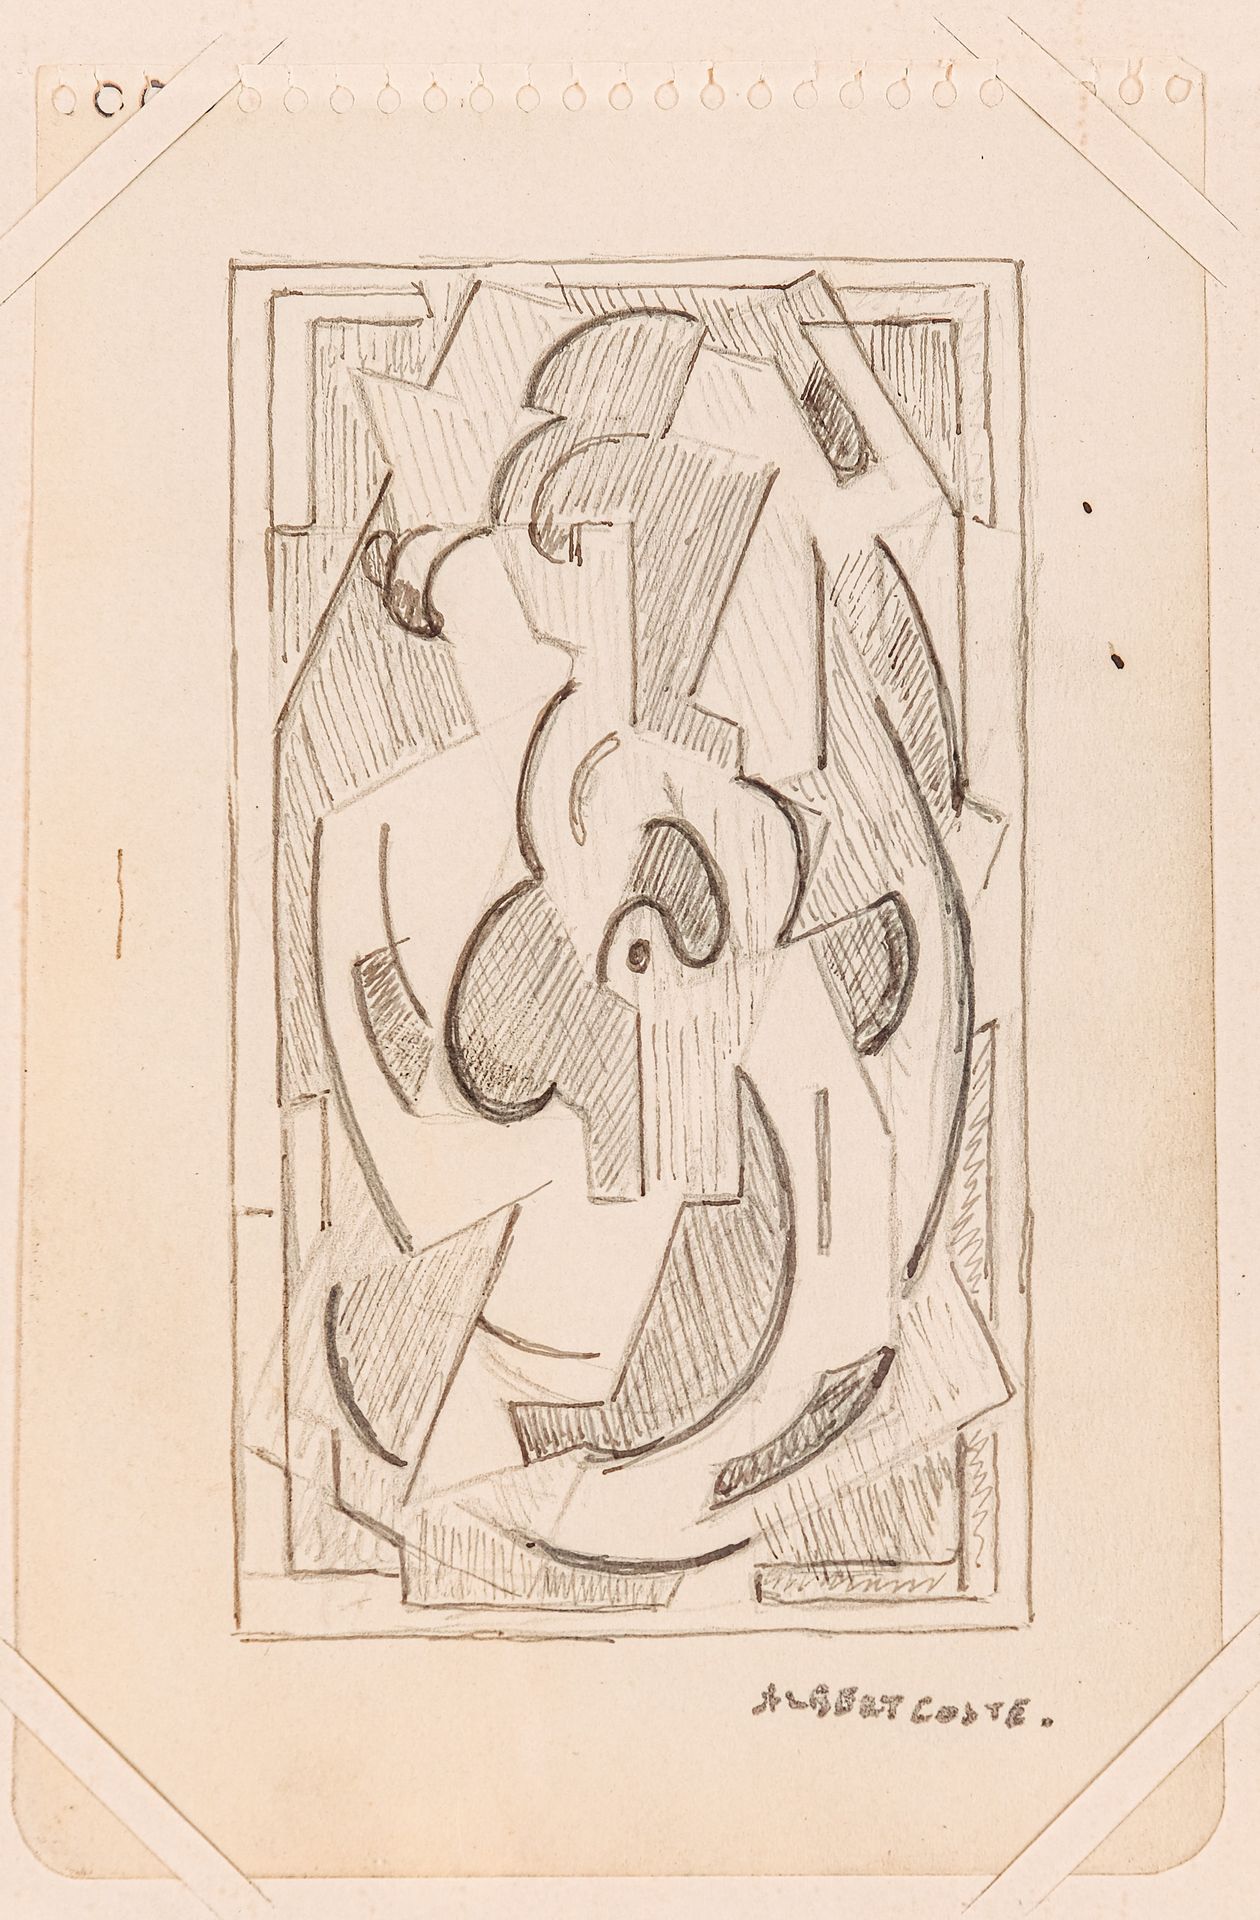 Null Albert COSTE (1896-1985)

Composizione

Matita

Firmato in basso a destra

&hellip;